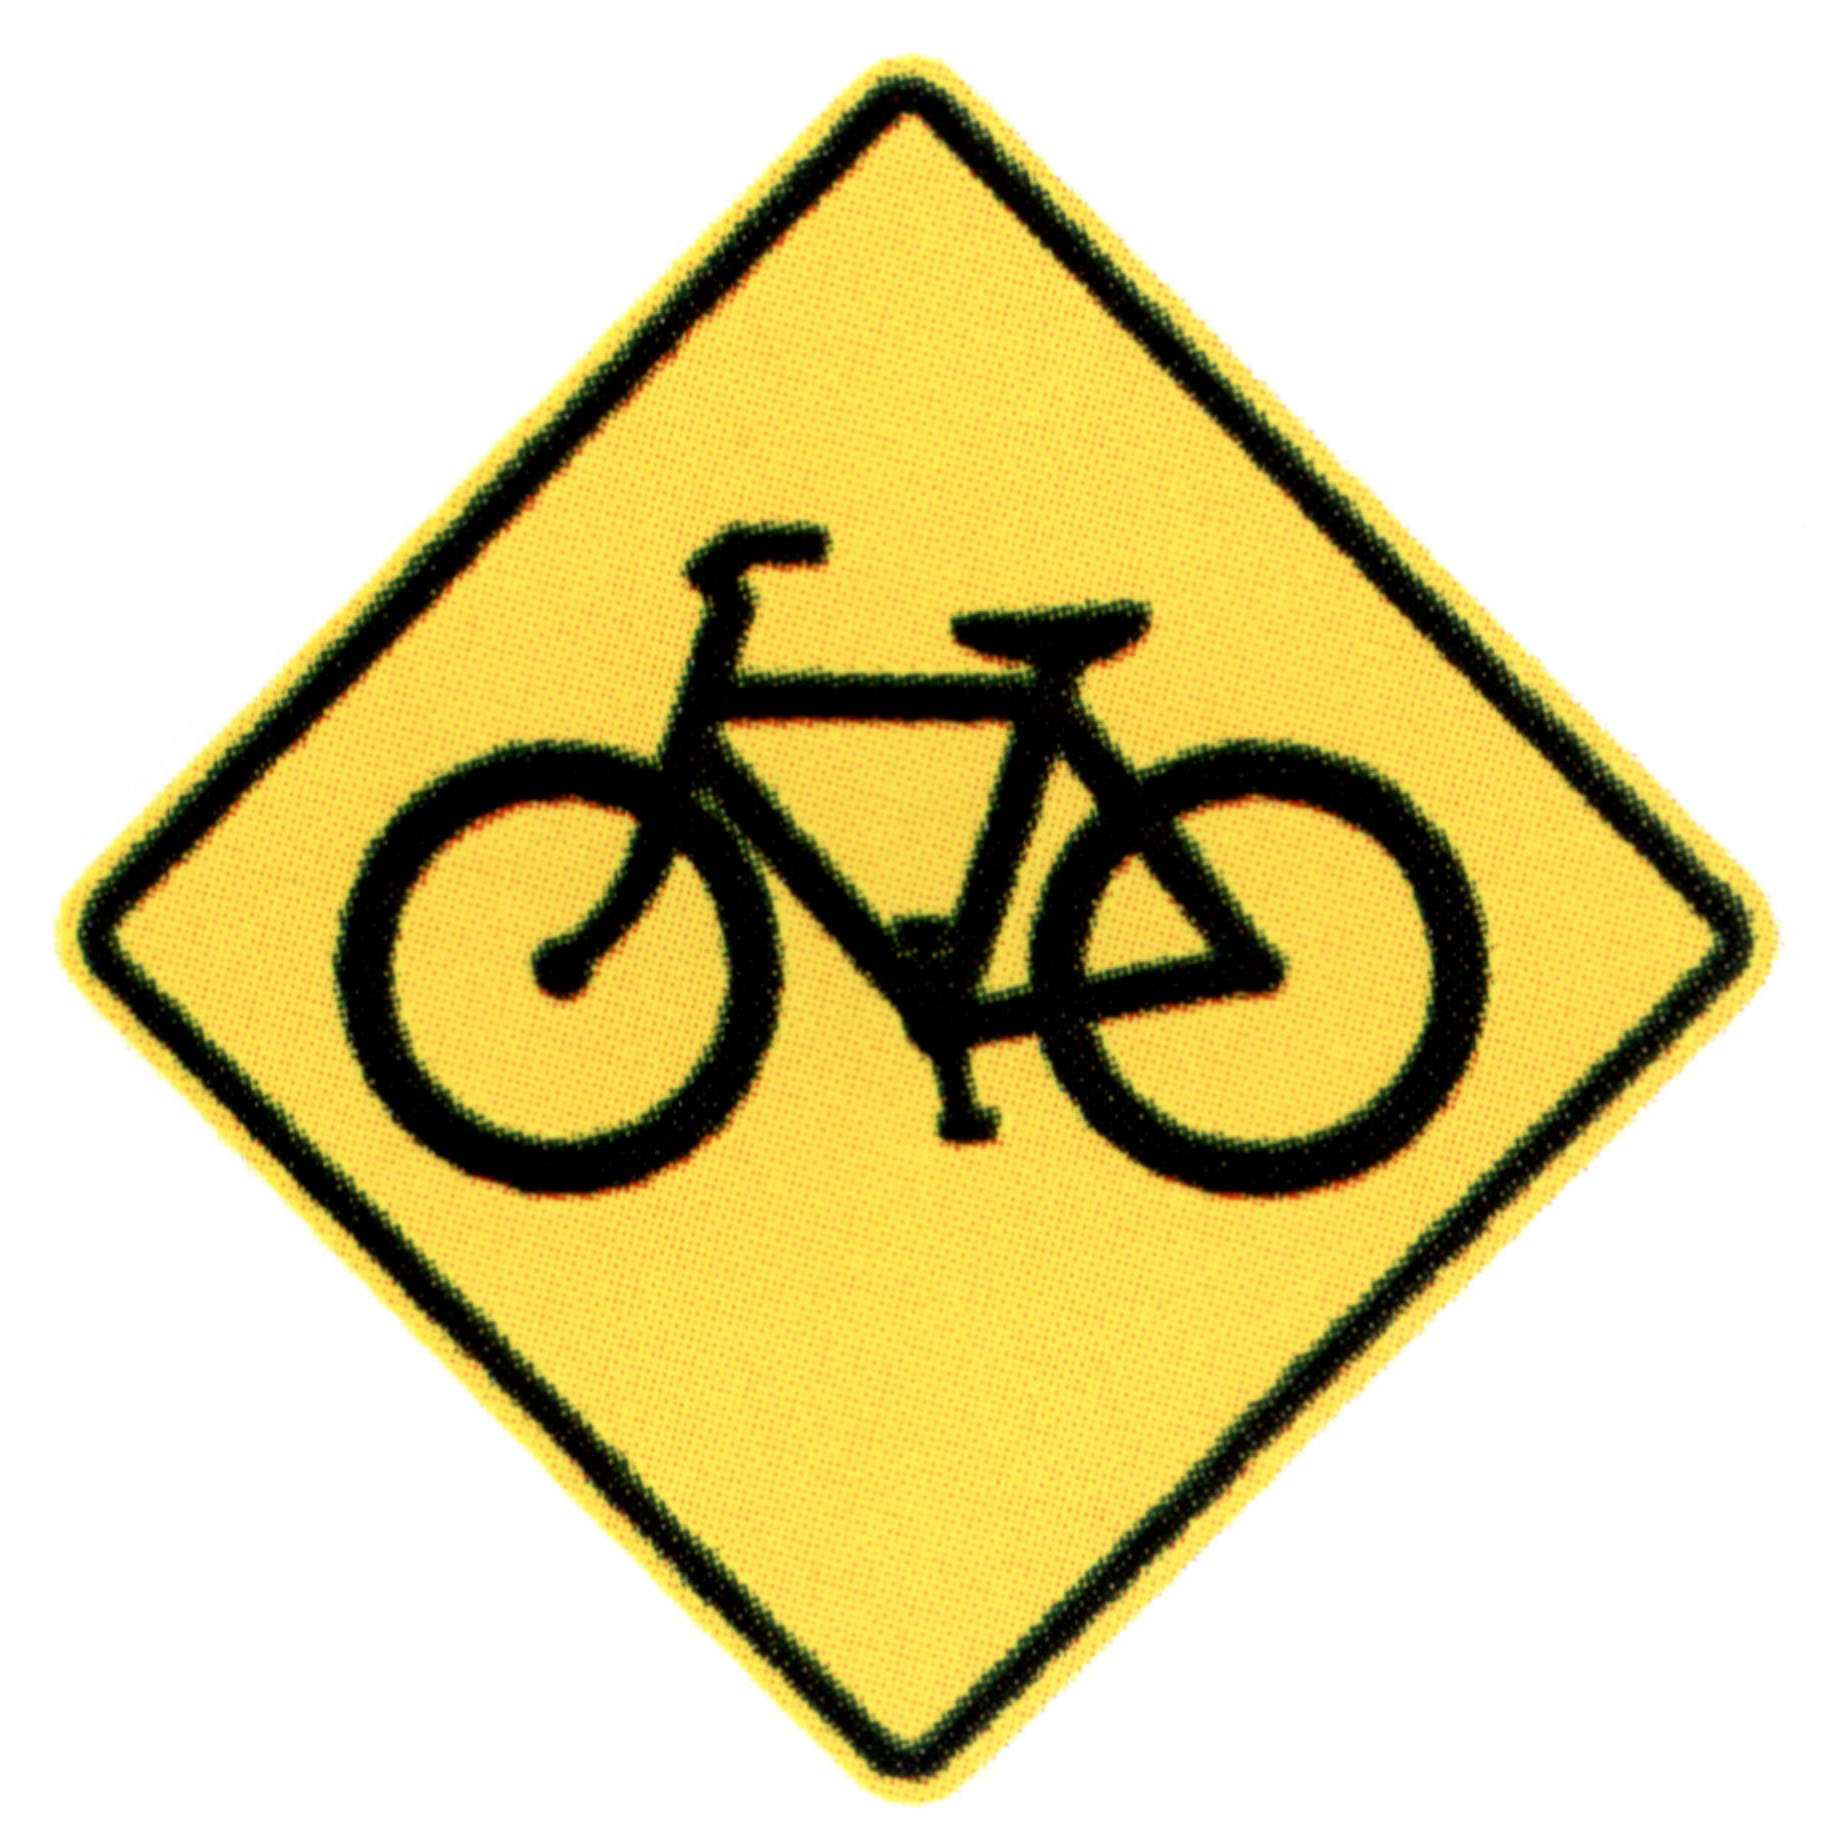 yellow bike clipart - photo #39